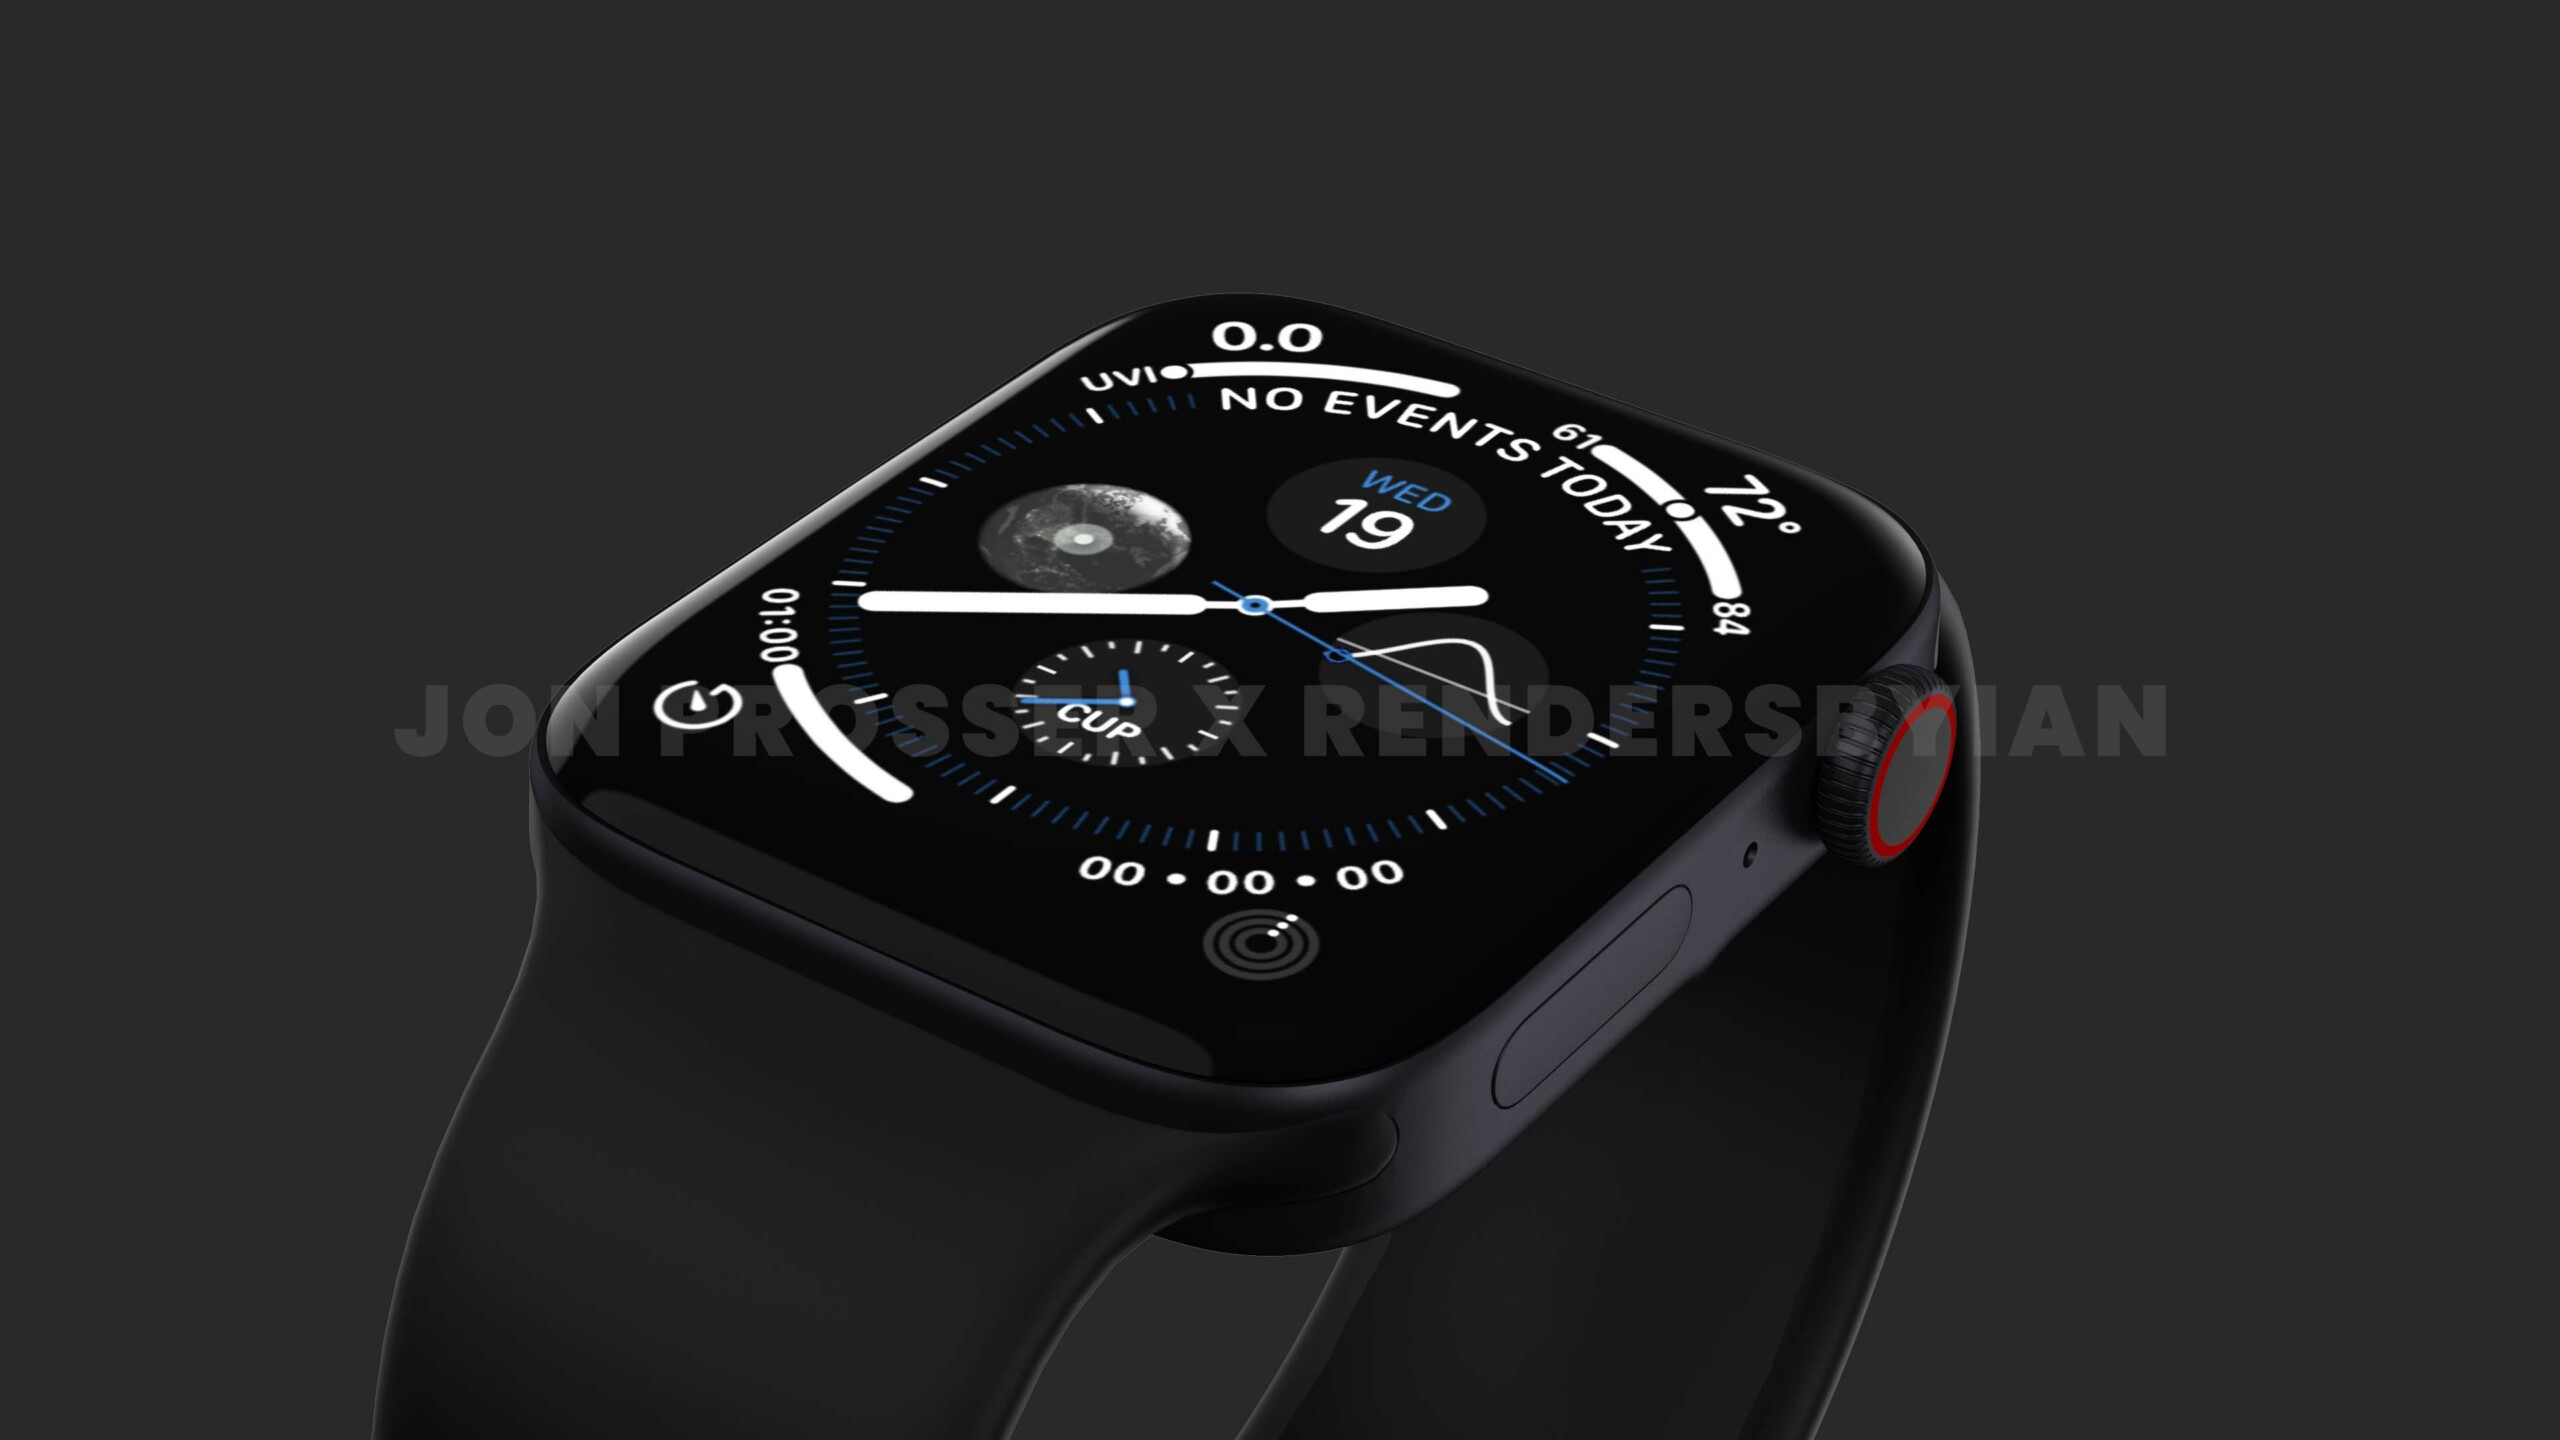 Apple Watch Series 7 // Source : Jon Prosser x Rendersbylan